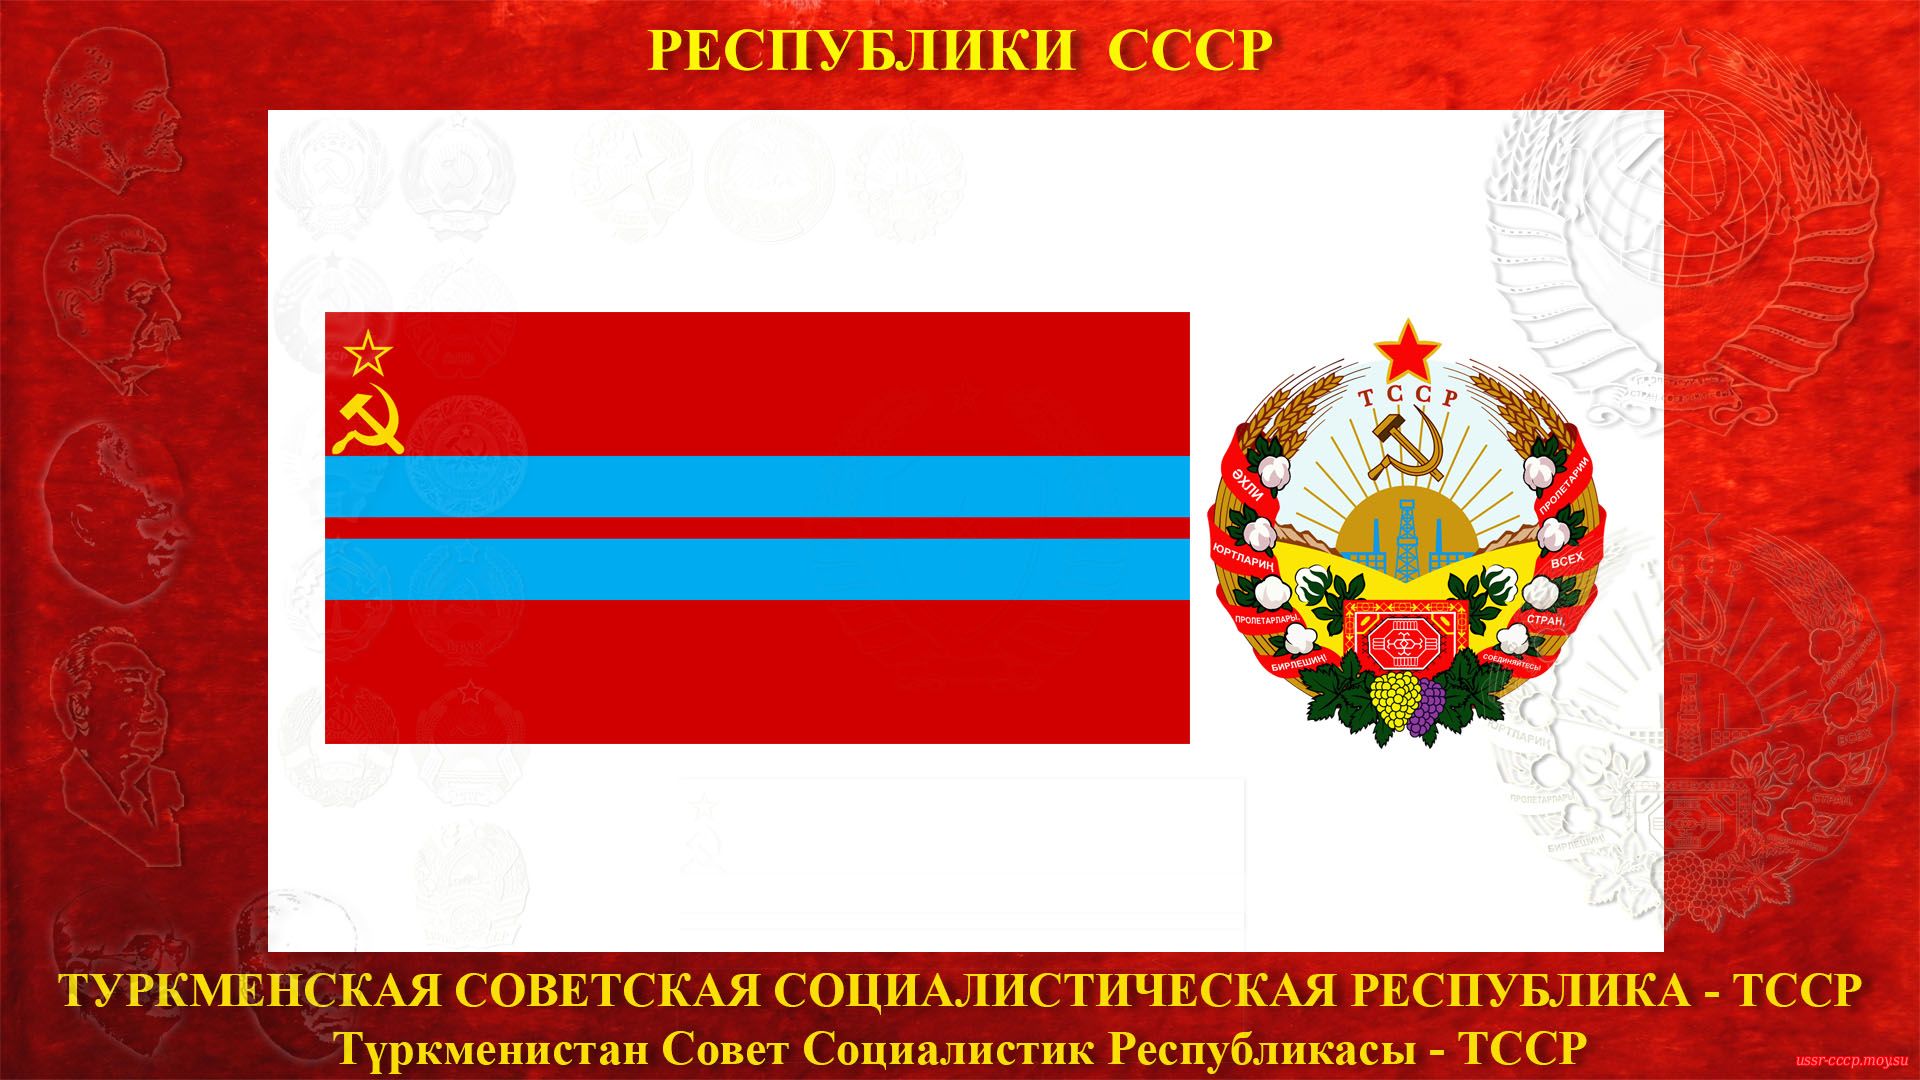 ТССР — Туркменская Советская Социалистическая Республика (27.10.1924 — де-юре)